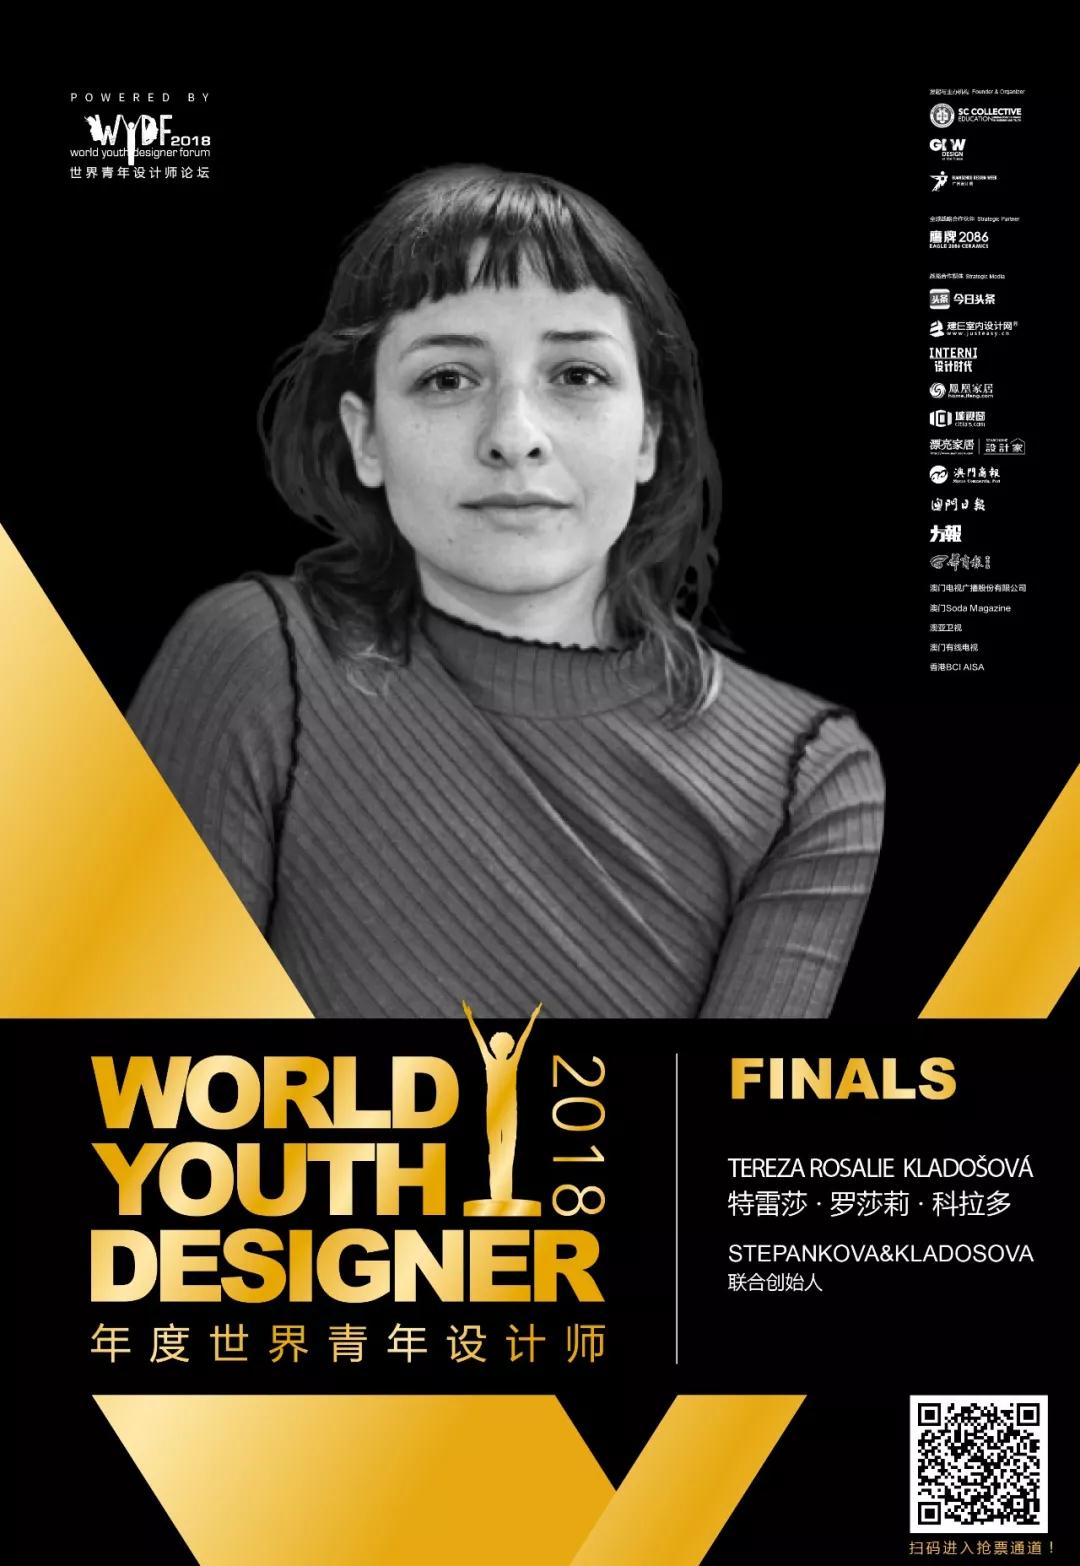 代表女性设计师发声的欧洲候选人Tereza Rosalie Kladoš，11月27日决战WYDF2018年度青年设计师